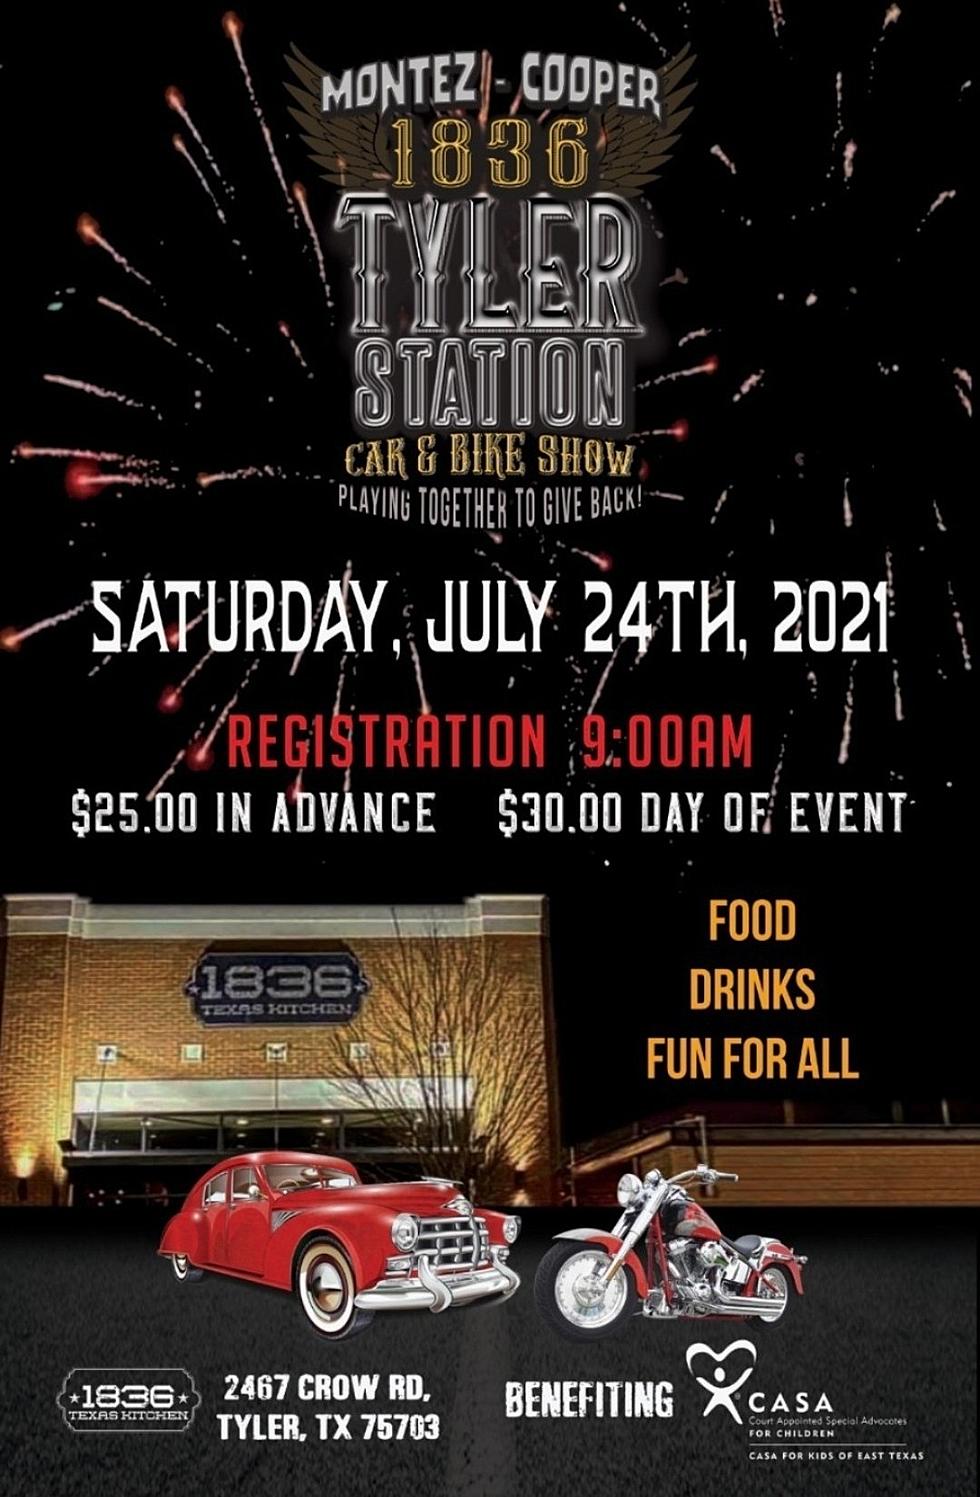 Montez &#038; Cooper Host Fundraiser Car &#038; Bike Show CASA For Kids of East Texas